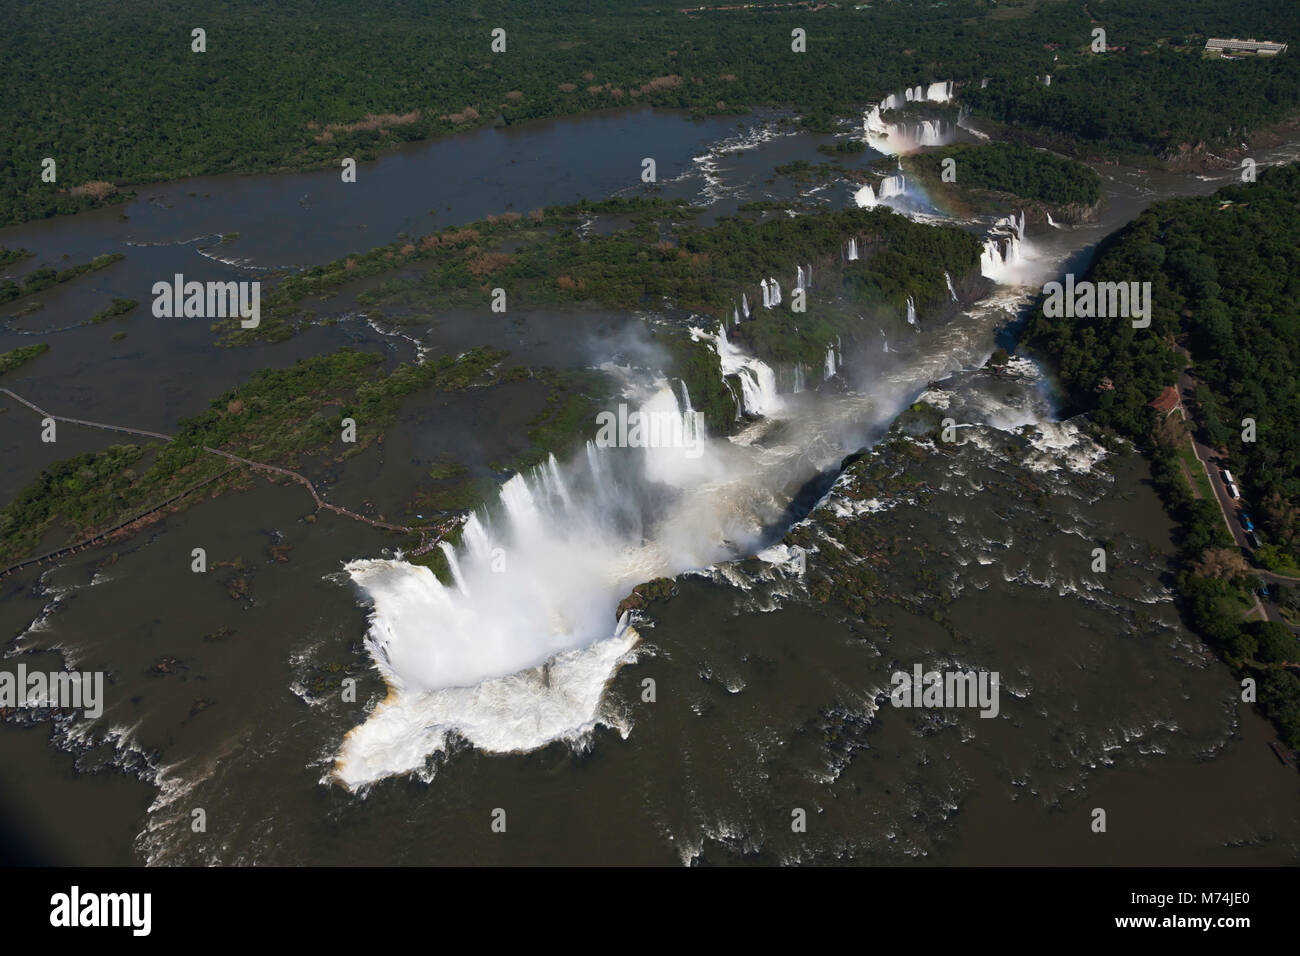 Panorama aérien dans tout le paysage des chutes d'Iguazu au Brésil, à la frontière Argentine, Paraguay UNESCO World Heritage site, merveilles naturelles du monde Banque D'Images